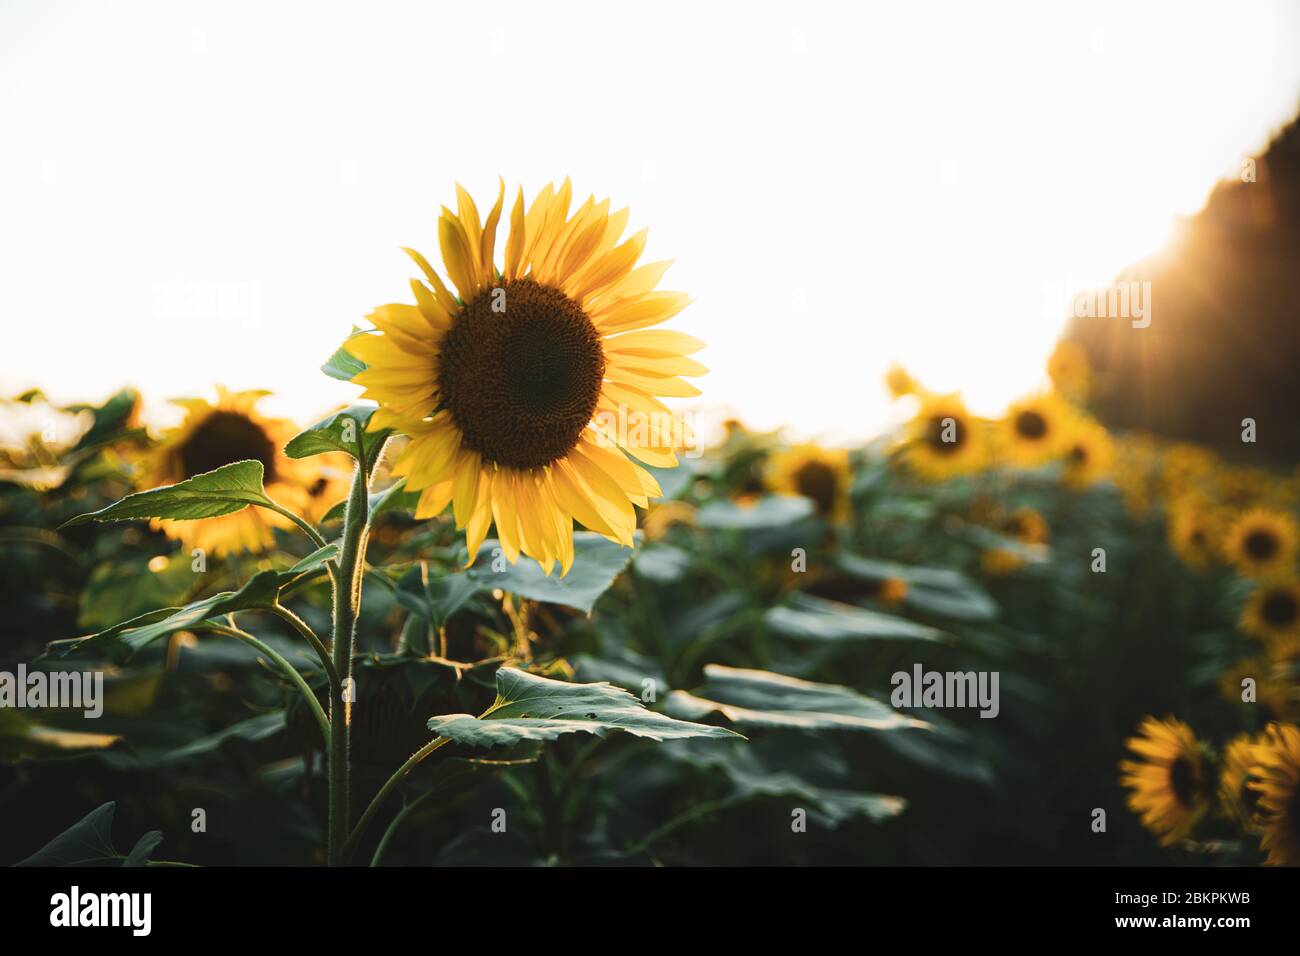 Helle gelbe Sonnenblume auf großen landwirtschaftlichen Feld mit Sonnenuntergang Licht Hintergrund, Sommer Natur Blume Stockfoto